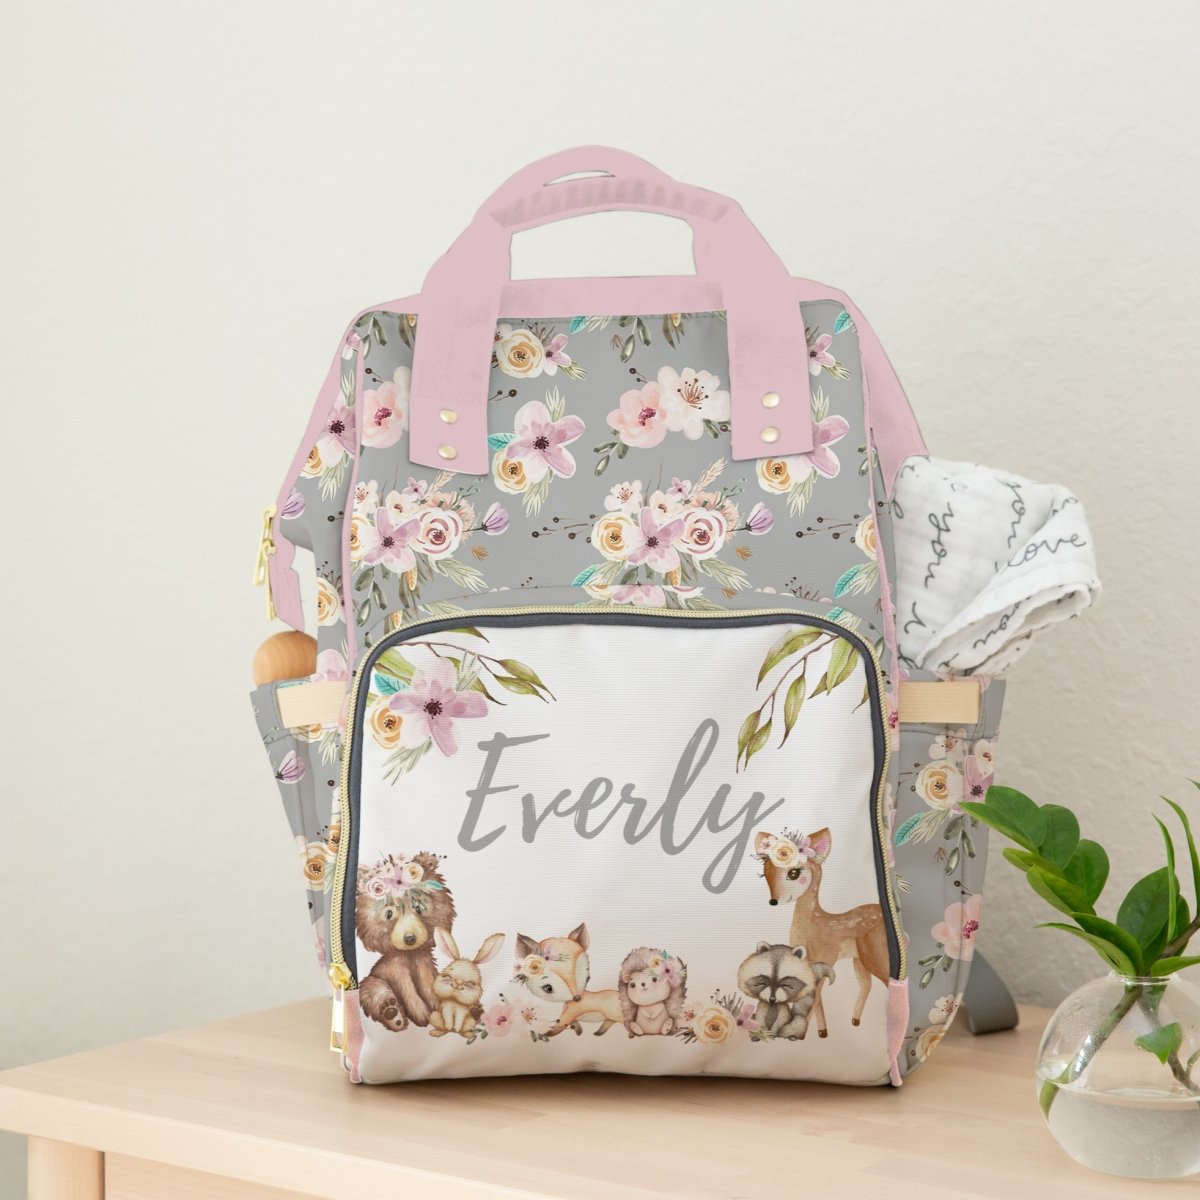 Floral Woodlands Personalized Backpack Diaper Bag - Floral Woodlands, gender_girl, text